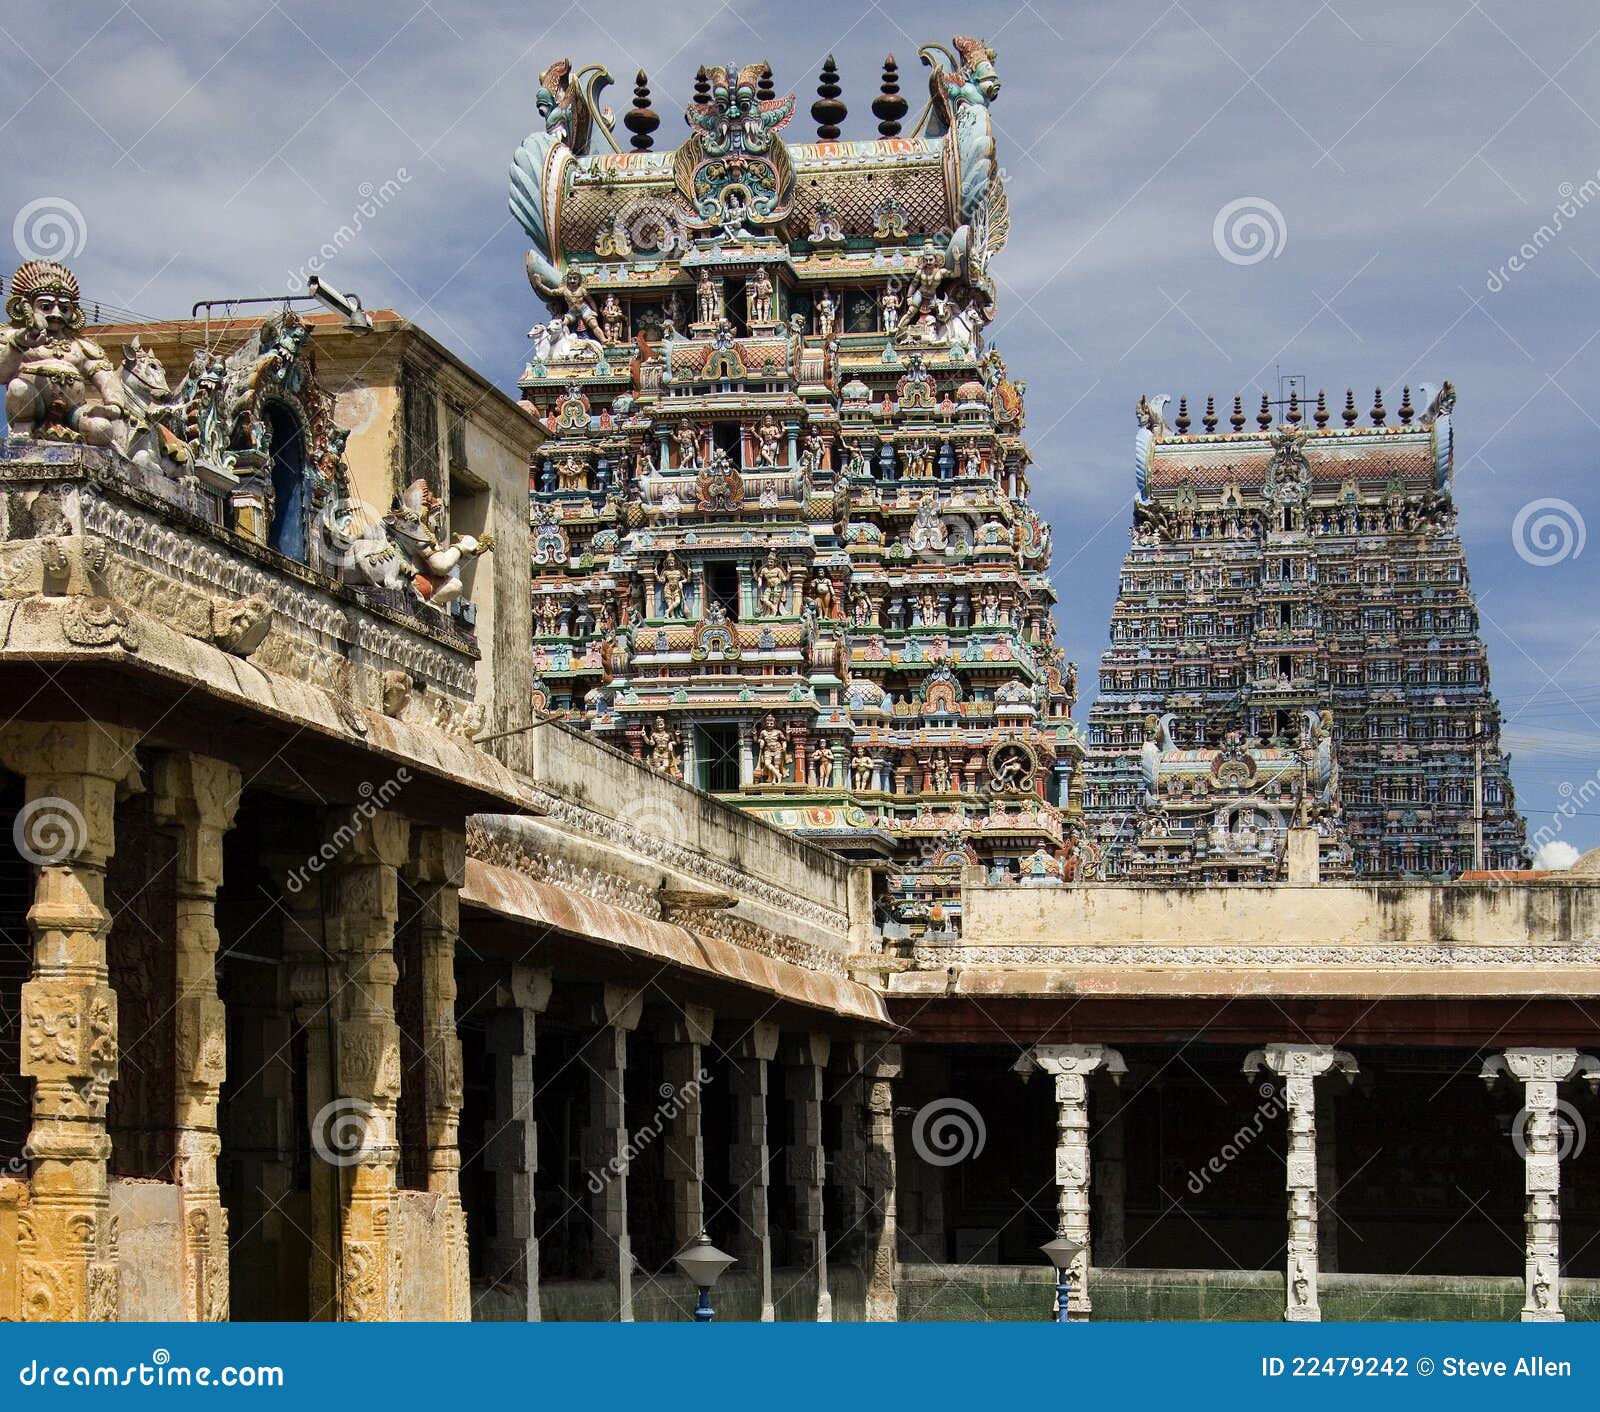 minakshi temple - madurai - tamil nadu - india